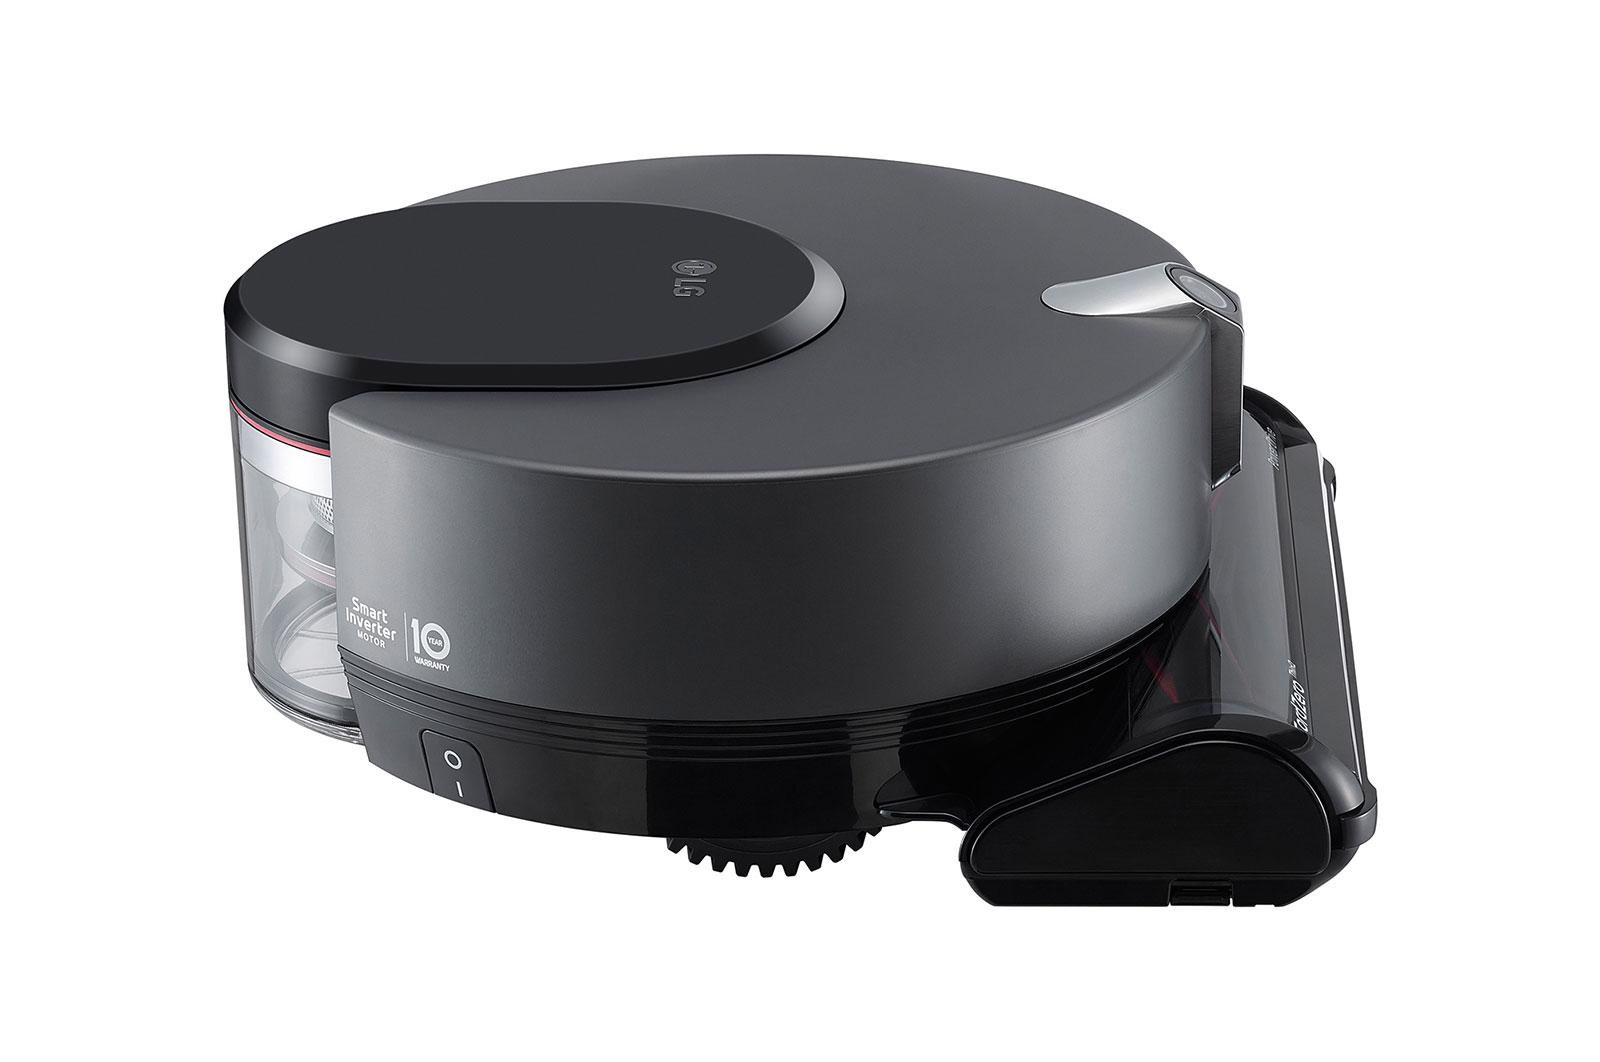 LG CordZero™ ThinQ Robotic Vacuum - Matte Grey